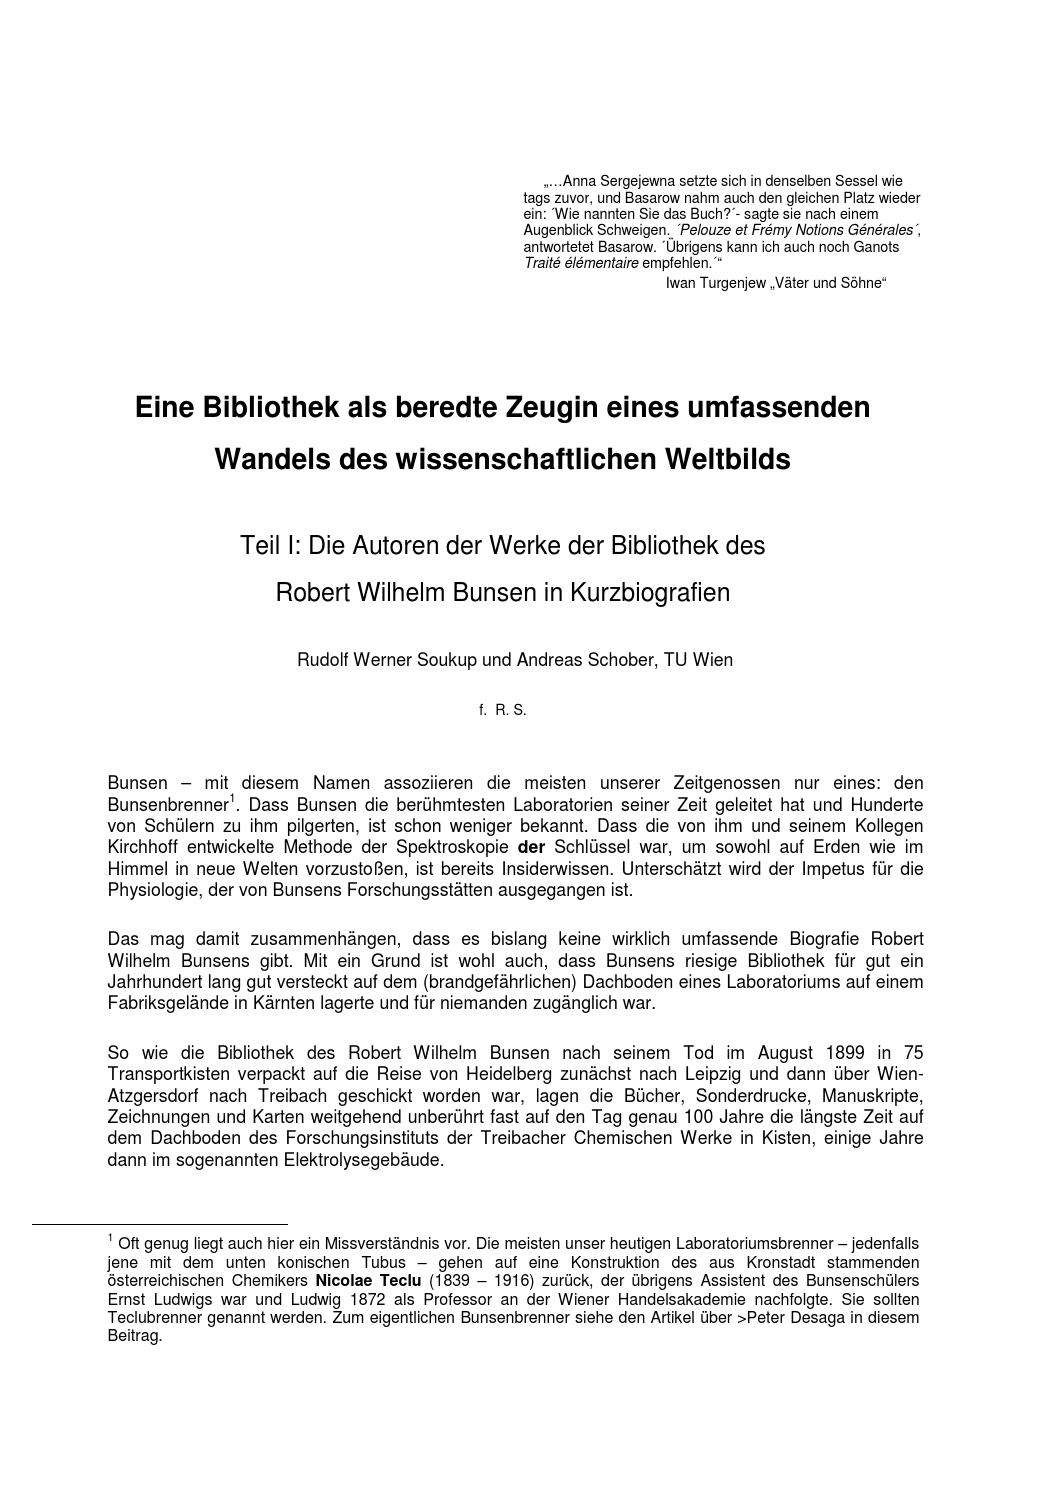 Botanischer Garten Zürich Frisch Autoren Der Bunsenbibliothek Teil 1 by Auer Von Welsbach